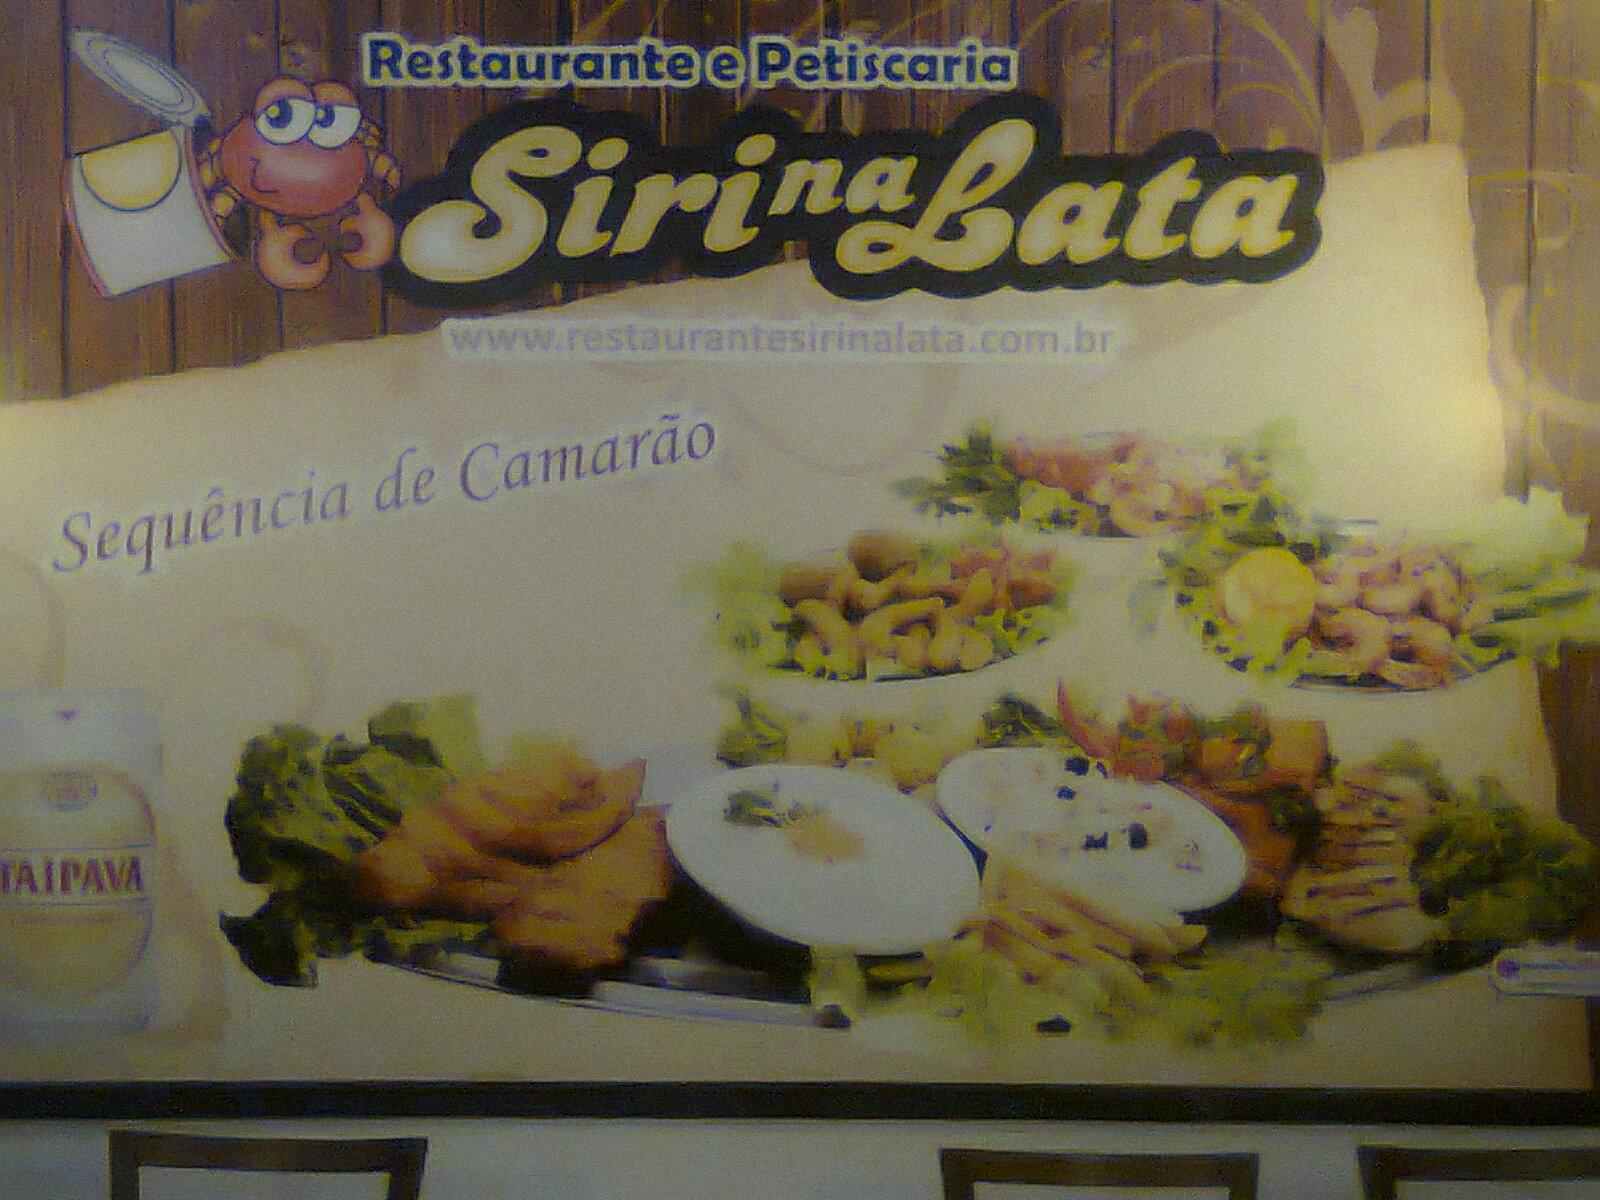 Restaurante Siri na Lata